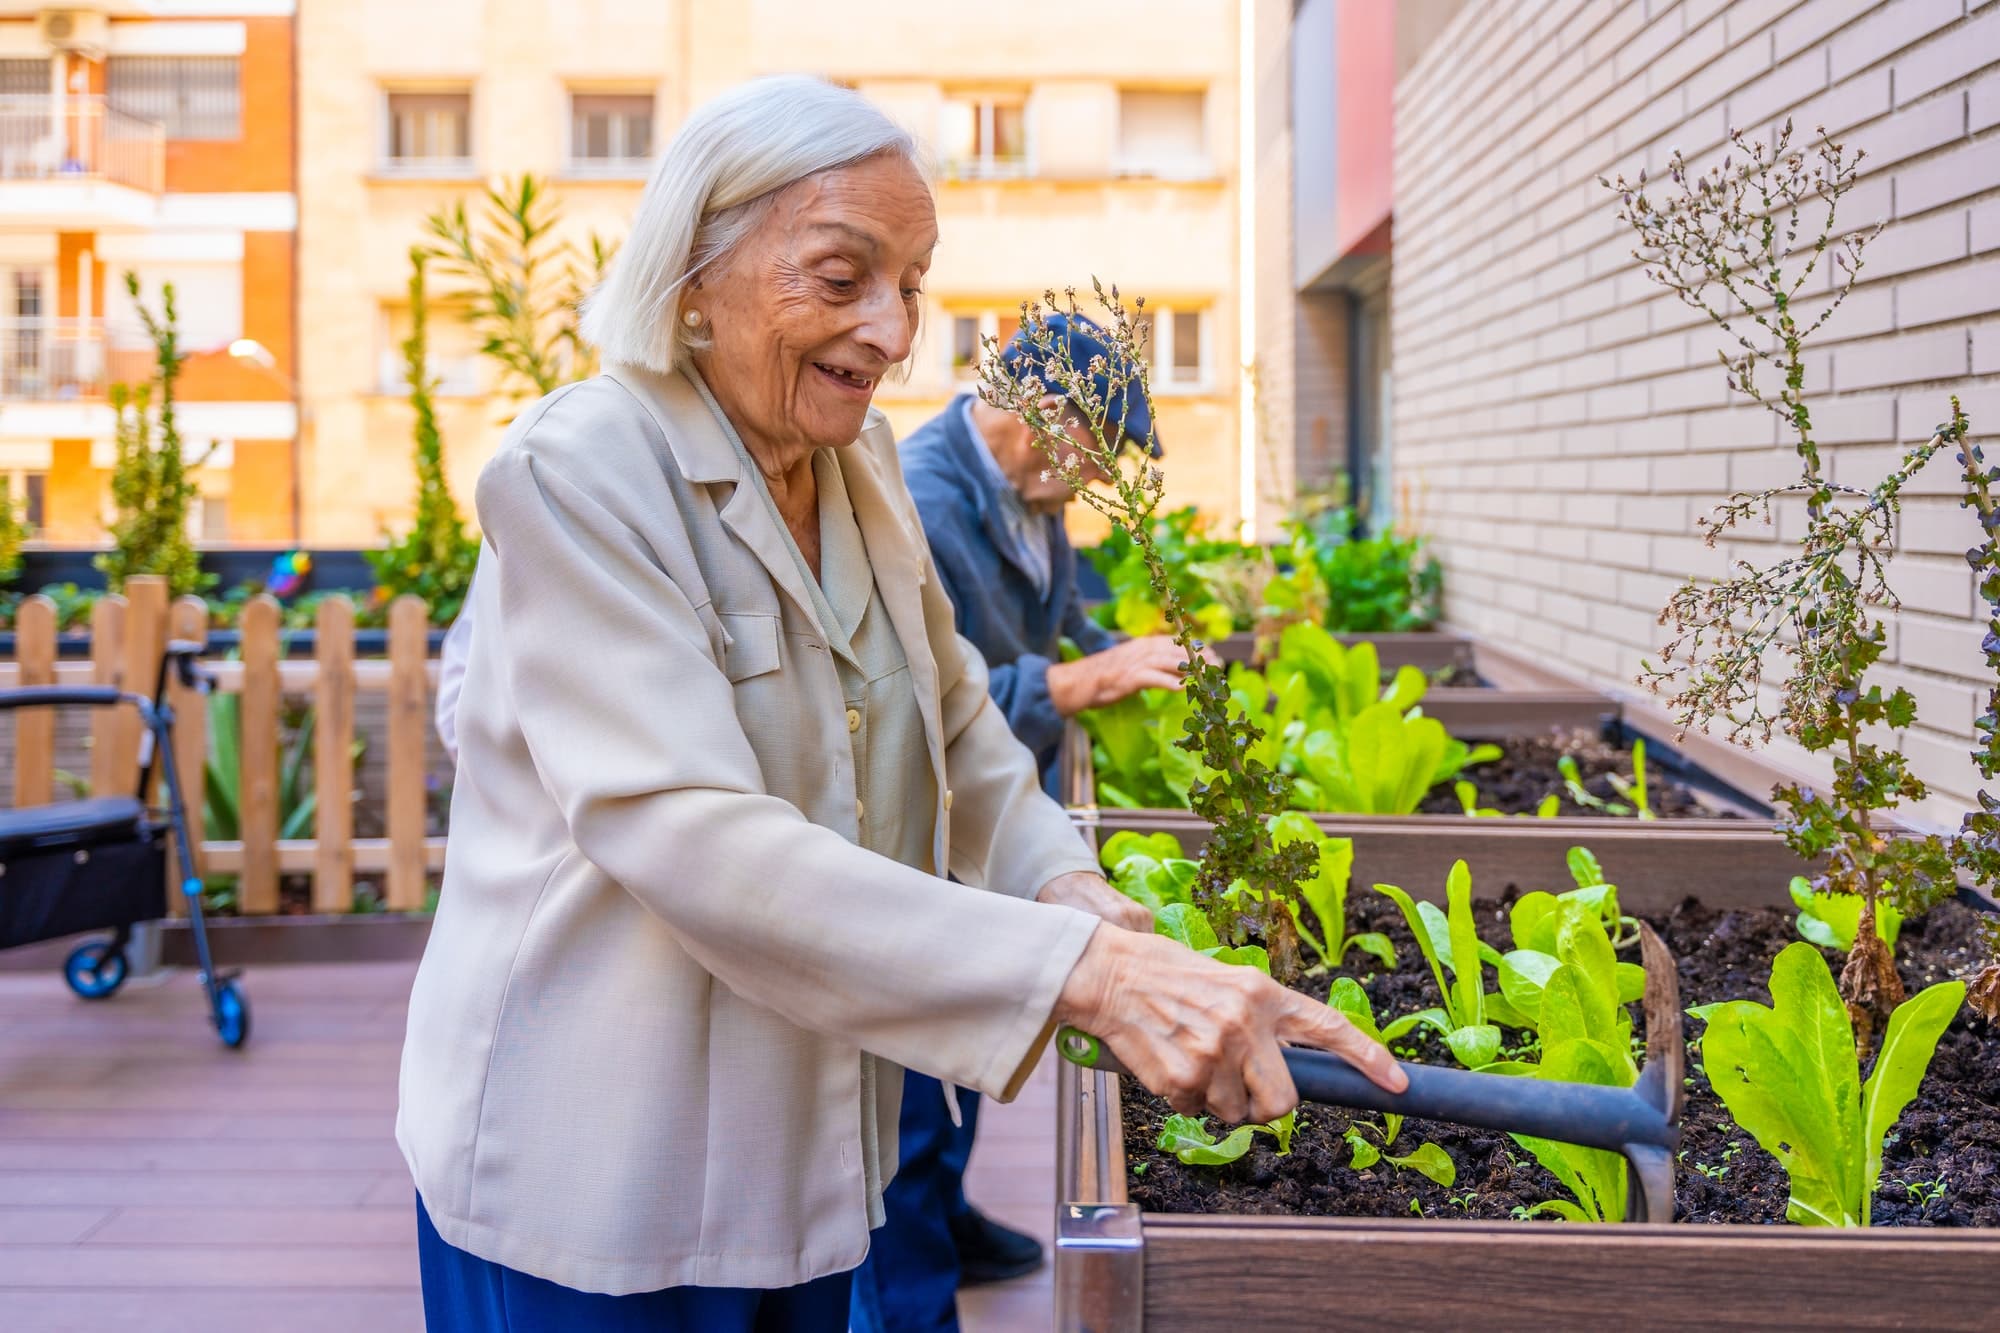 Organiser des rencontres amicales autour du jardinage pour les seniors